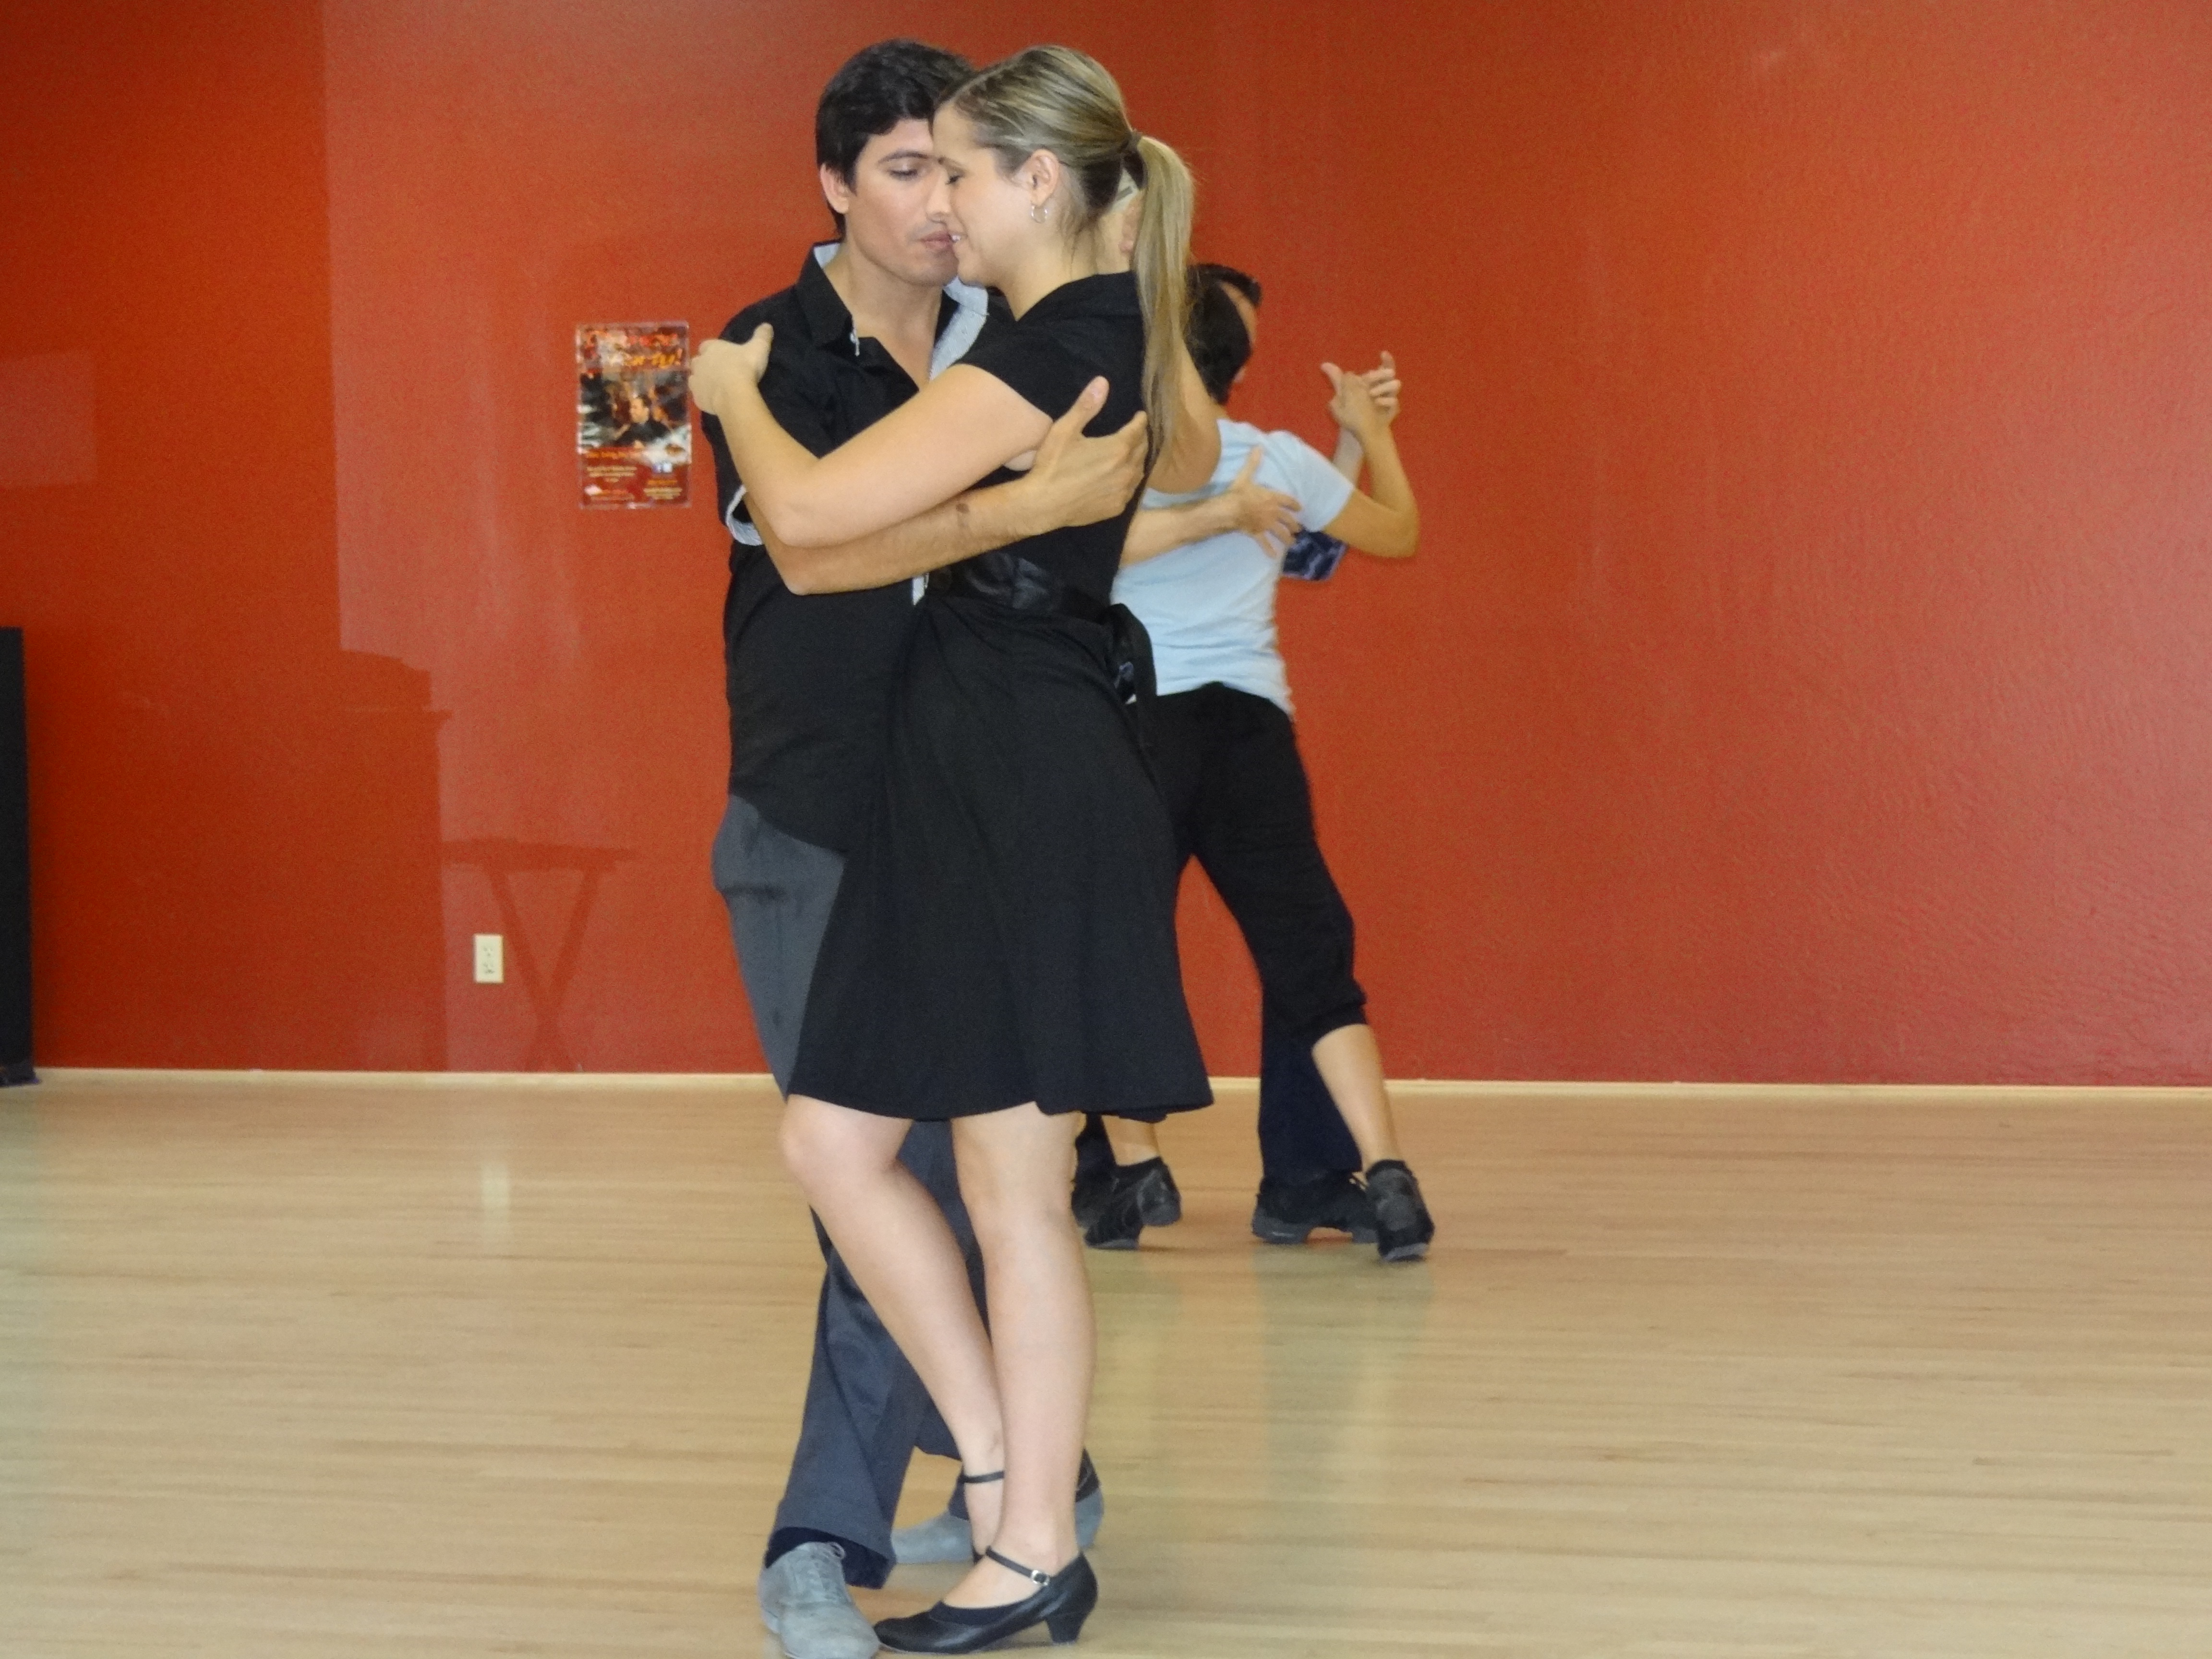 Tango Dance Photos - Tango – Victoria Ballroom Dance Society | Bodegawasues